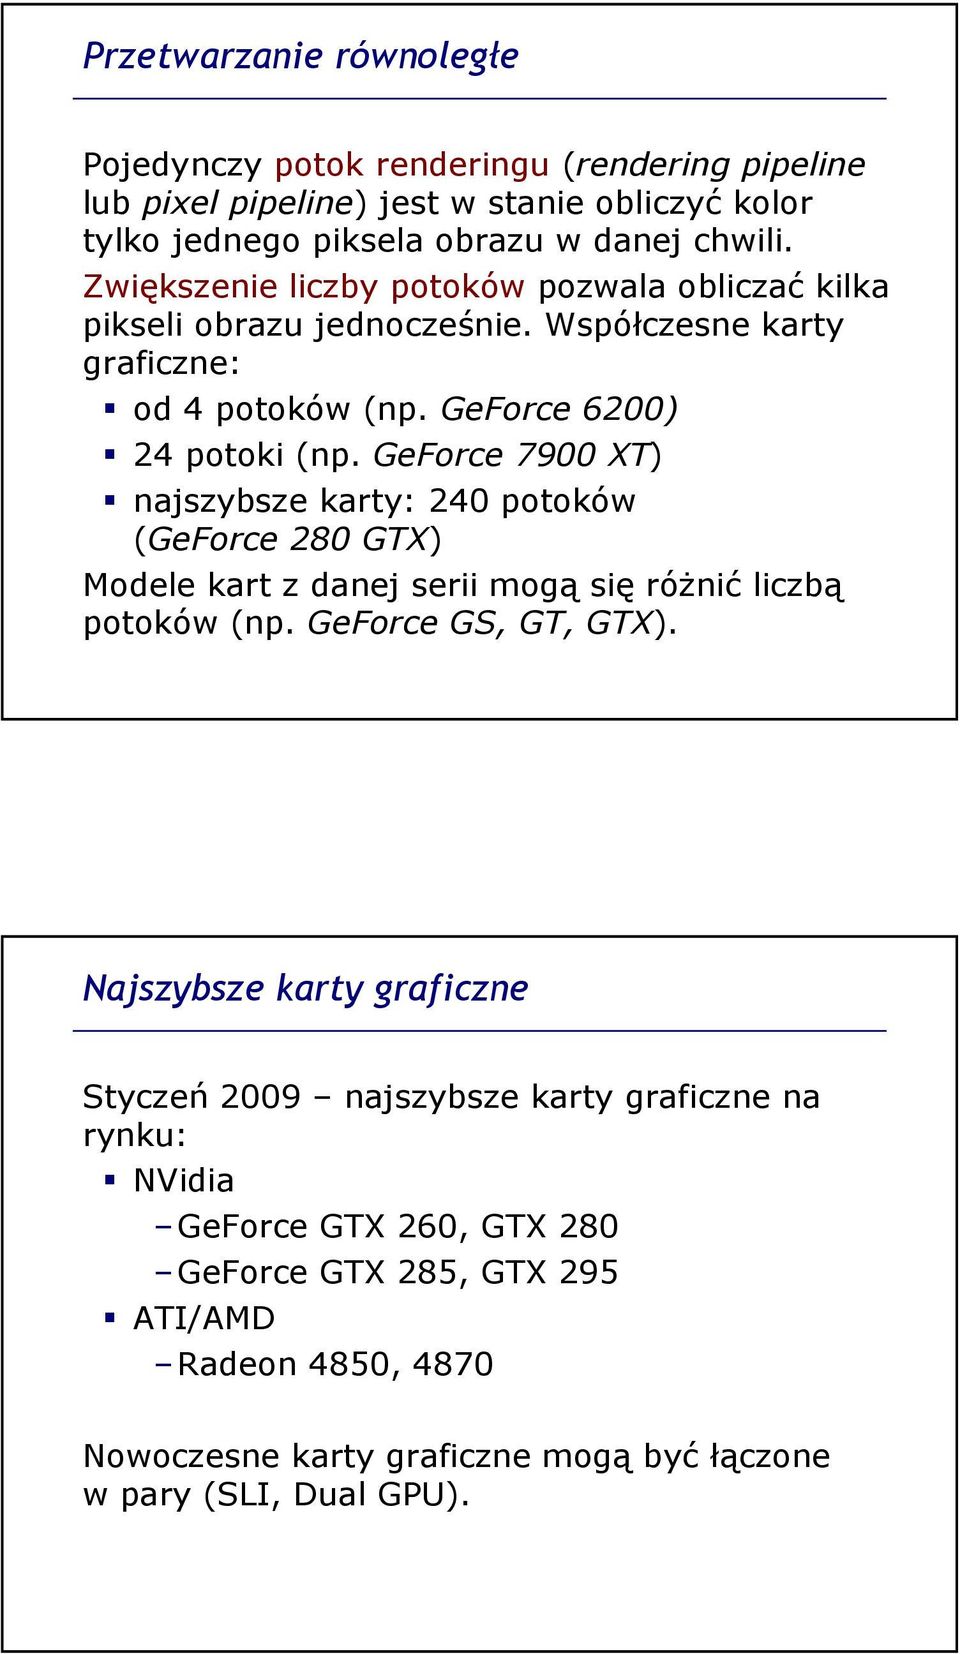 GeForce 7900 XT) najszybsze karty: 240 potoków (GeForce 280 GTX) Modele kart z danej serii mogą się róŝnić liczbą potoków (np. GeForce GS, GT, GTX).